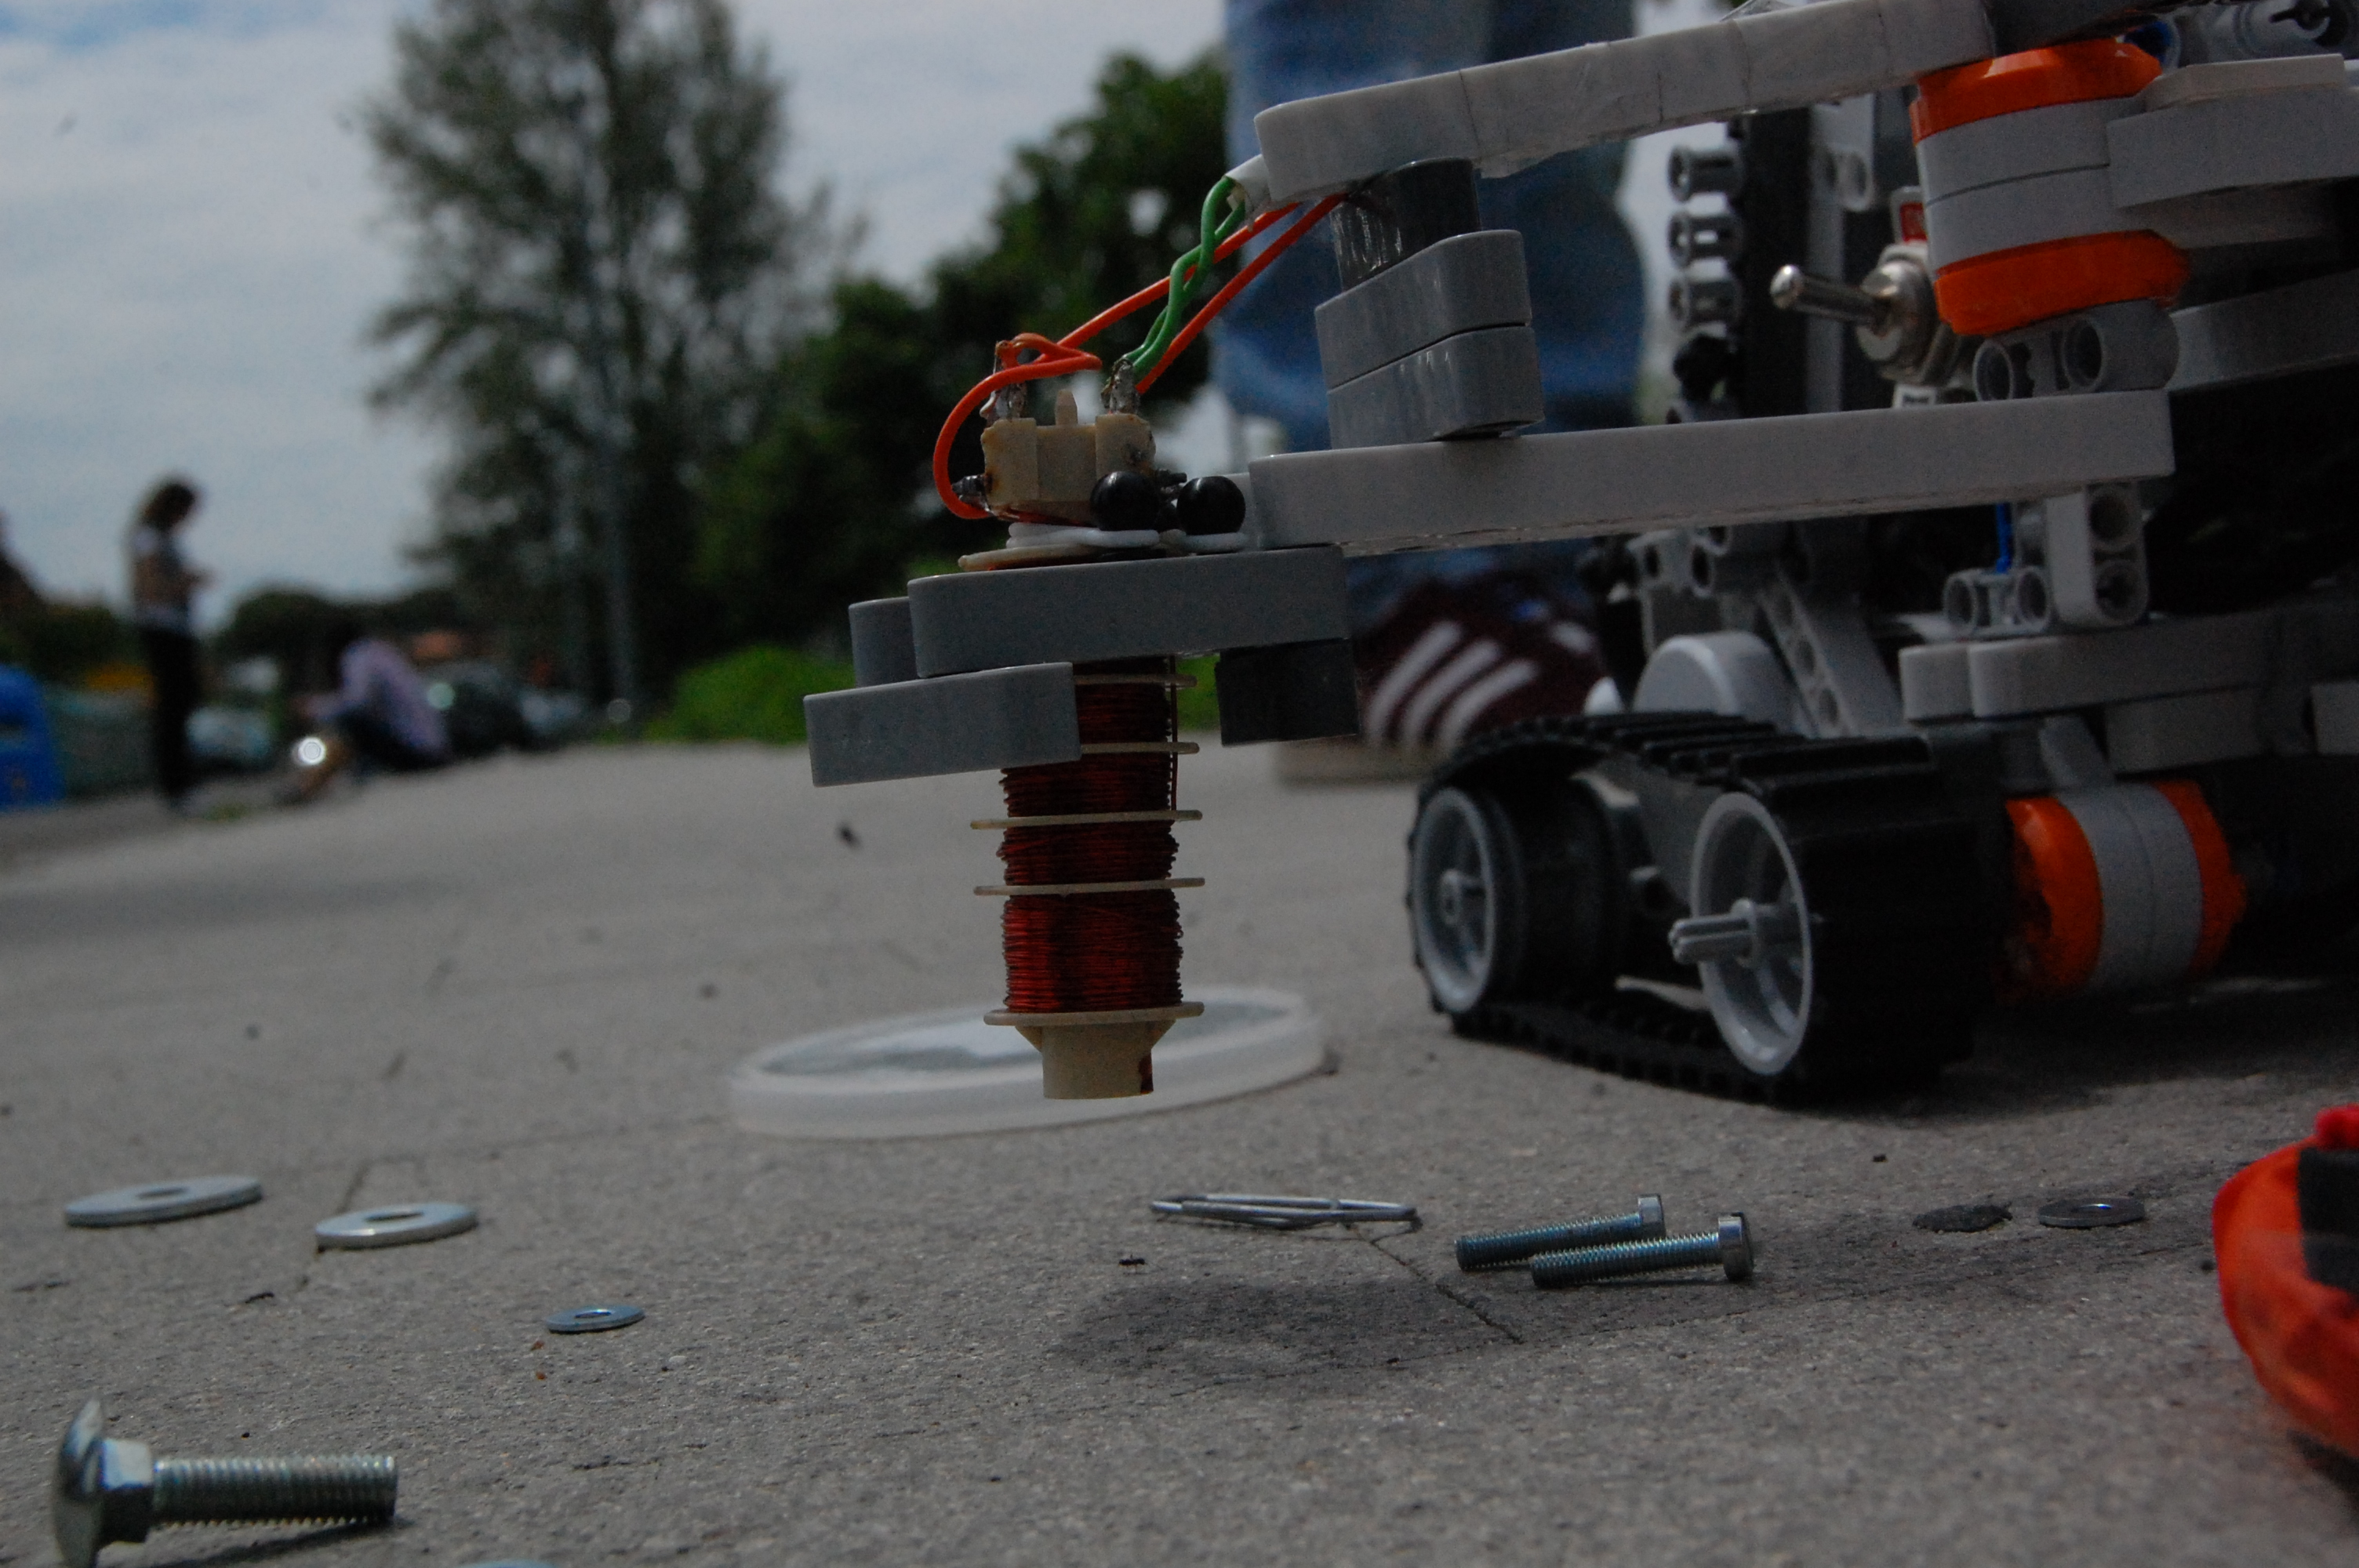 Prolegomeni al progetto Le carenze del Lego Mindstorm Il robot della mia squadra, Mechmagnet, era pensato per raccogliere metallo da terra con un elettromagnete L